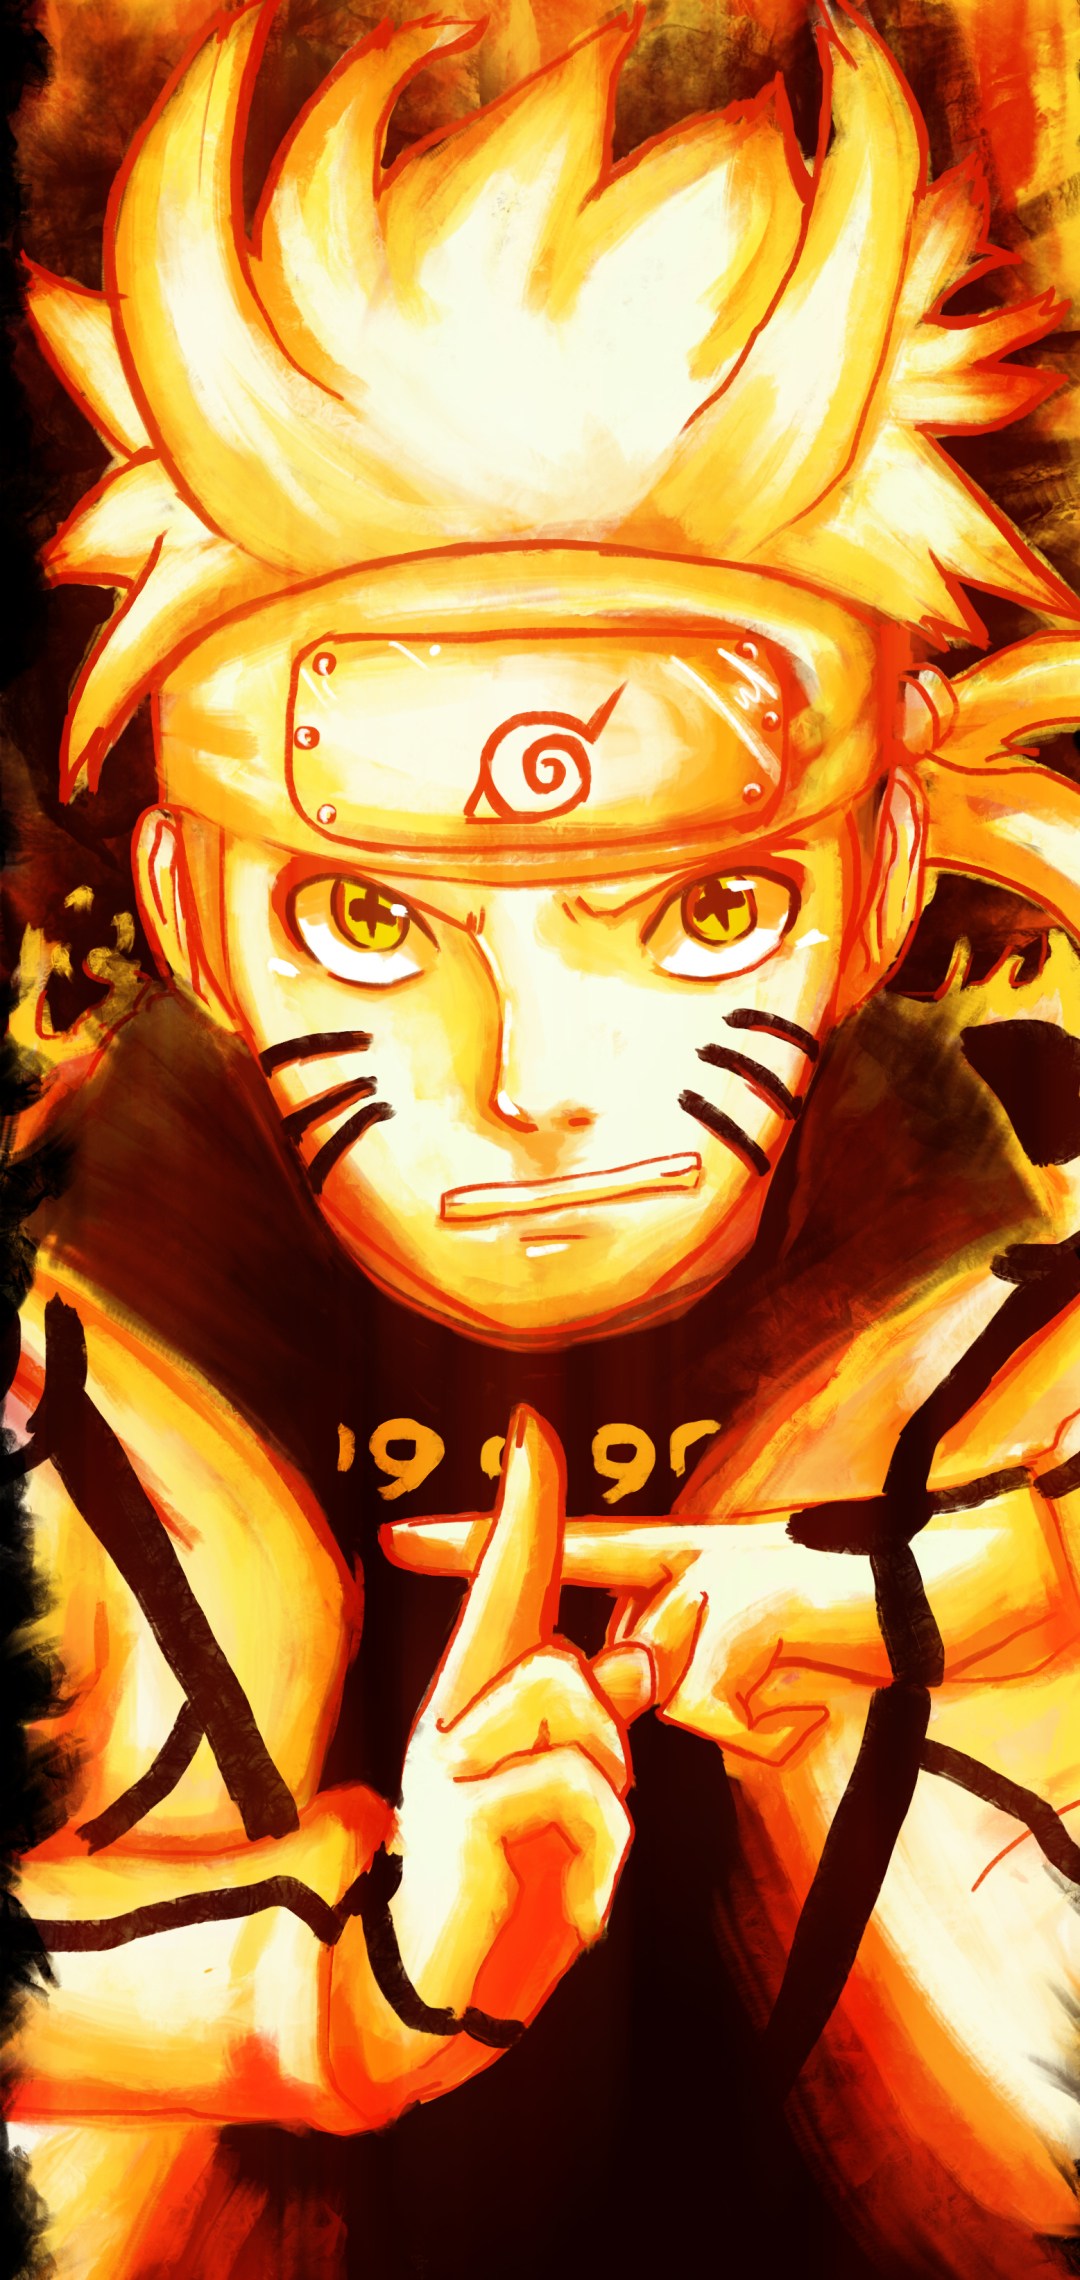 Hình nền Naruto sẽ cho bạn một trải nghiệm mới về thế giới Ninja đầy mạo hiểm và hấp dẫn. Hãy tải về ngay những hình nền Naruto đẹp mắt để cảm nhận được vẻ đẹp của anh hùng thiếu niên này.